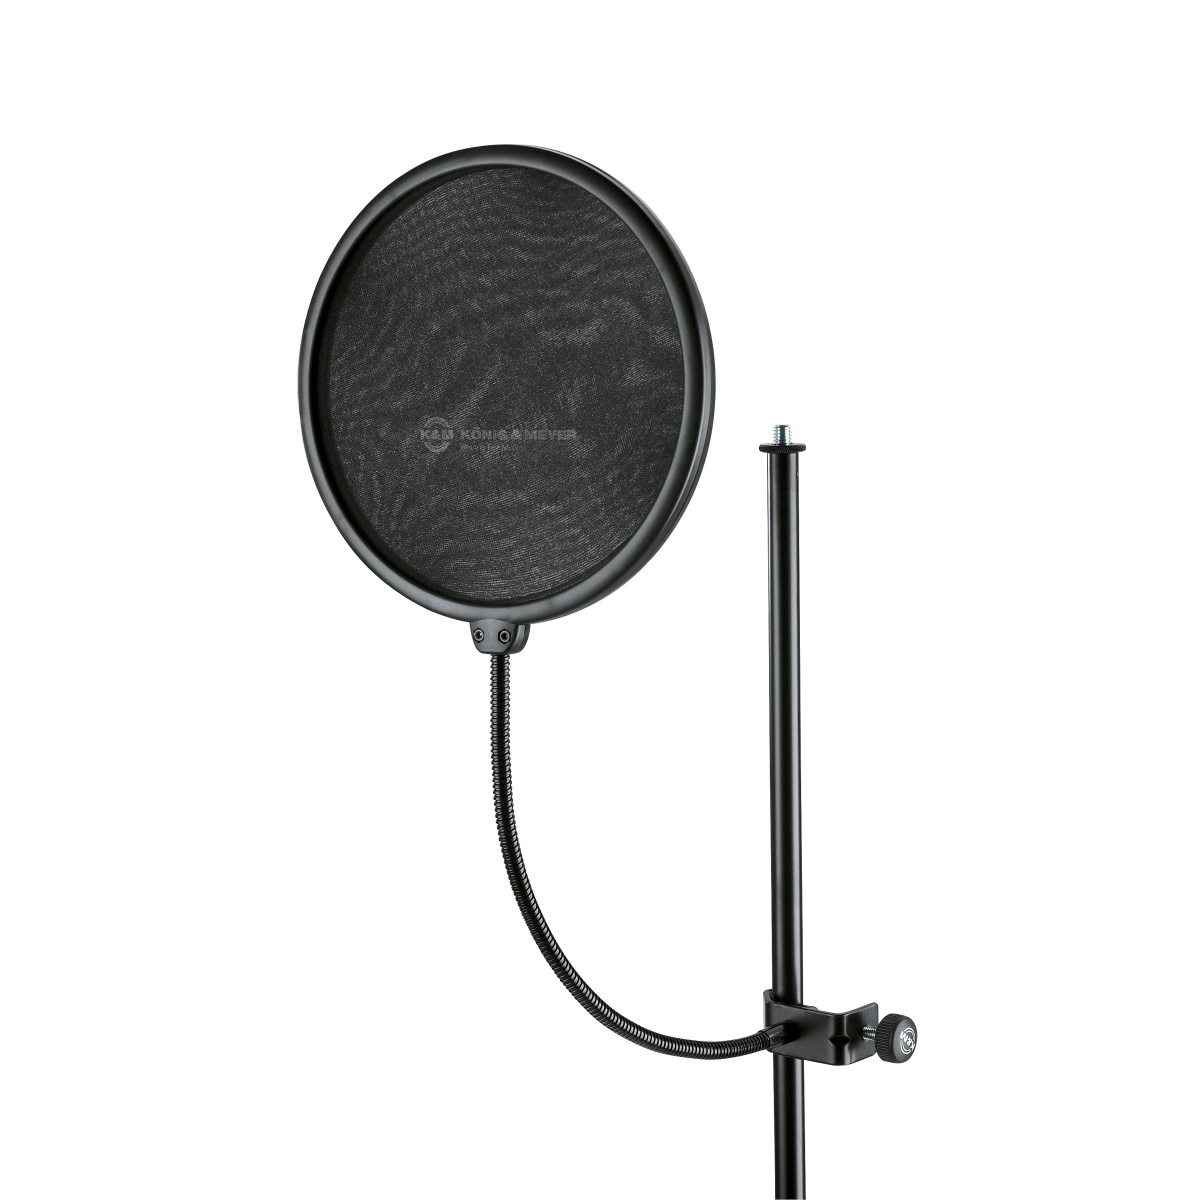 Аксессуары для микрофонов K&M 23966-000-55 поп фильтр диаметром 15 см с пластиковым держателем паук p2 для микрофона